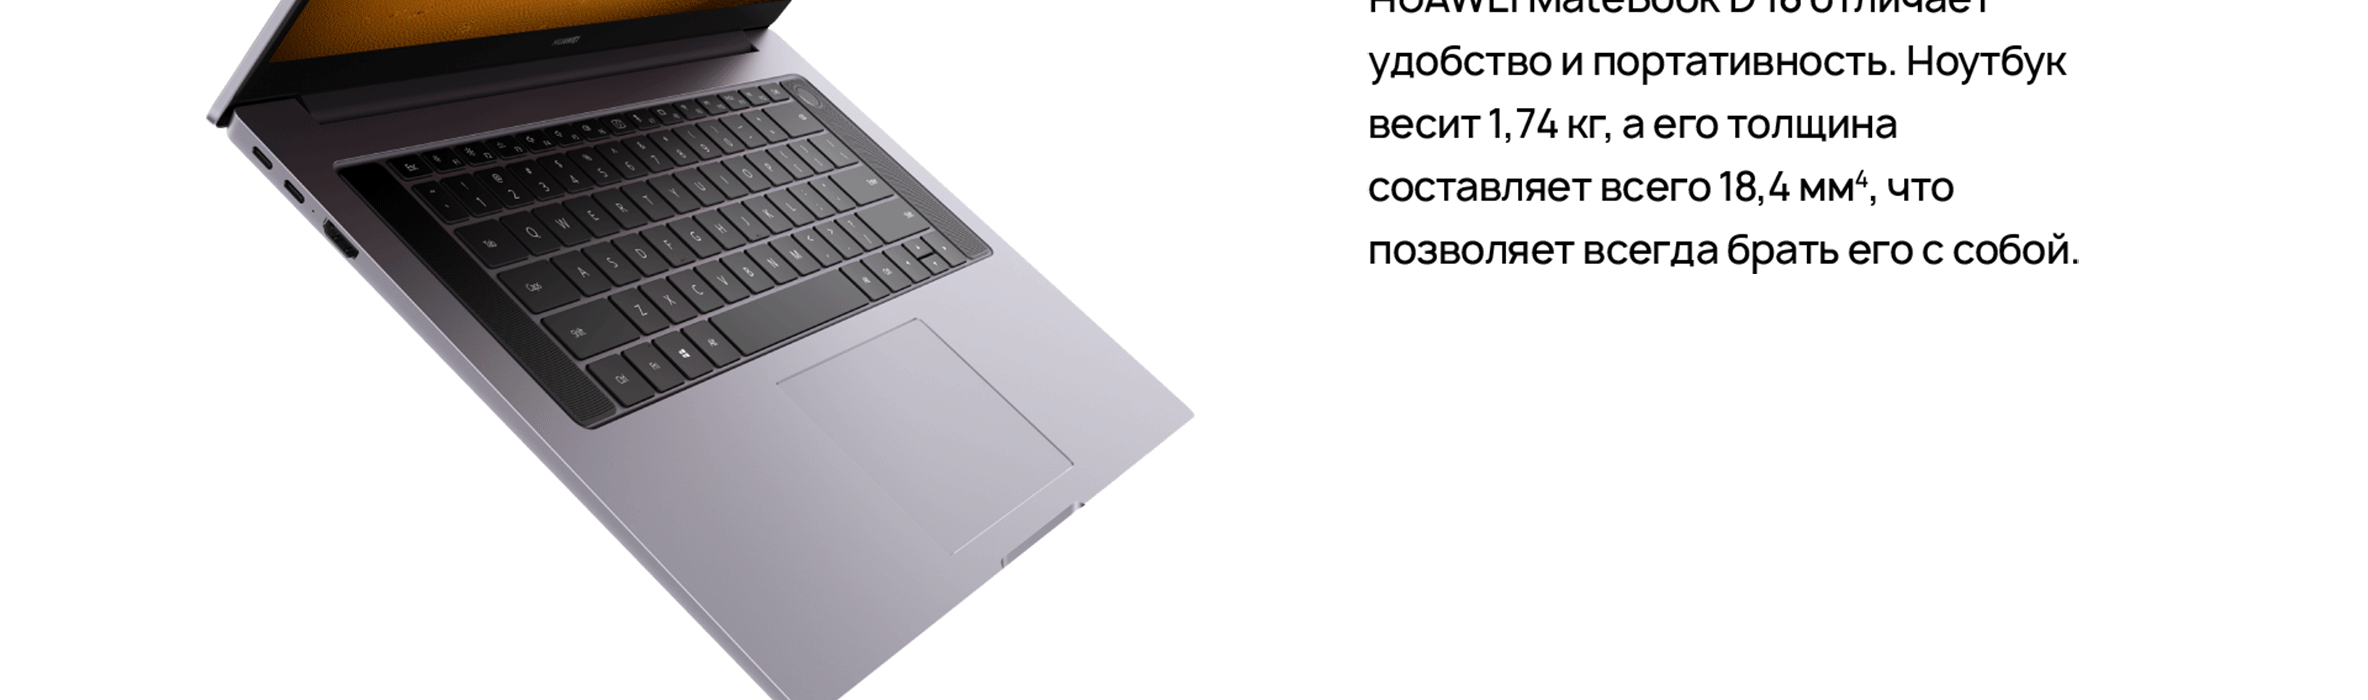 Ноутбук Huawei D16 Купить В Москве